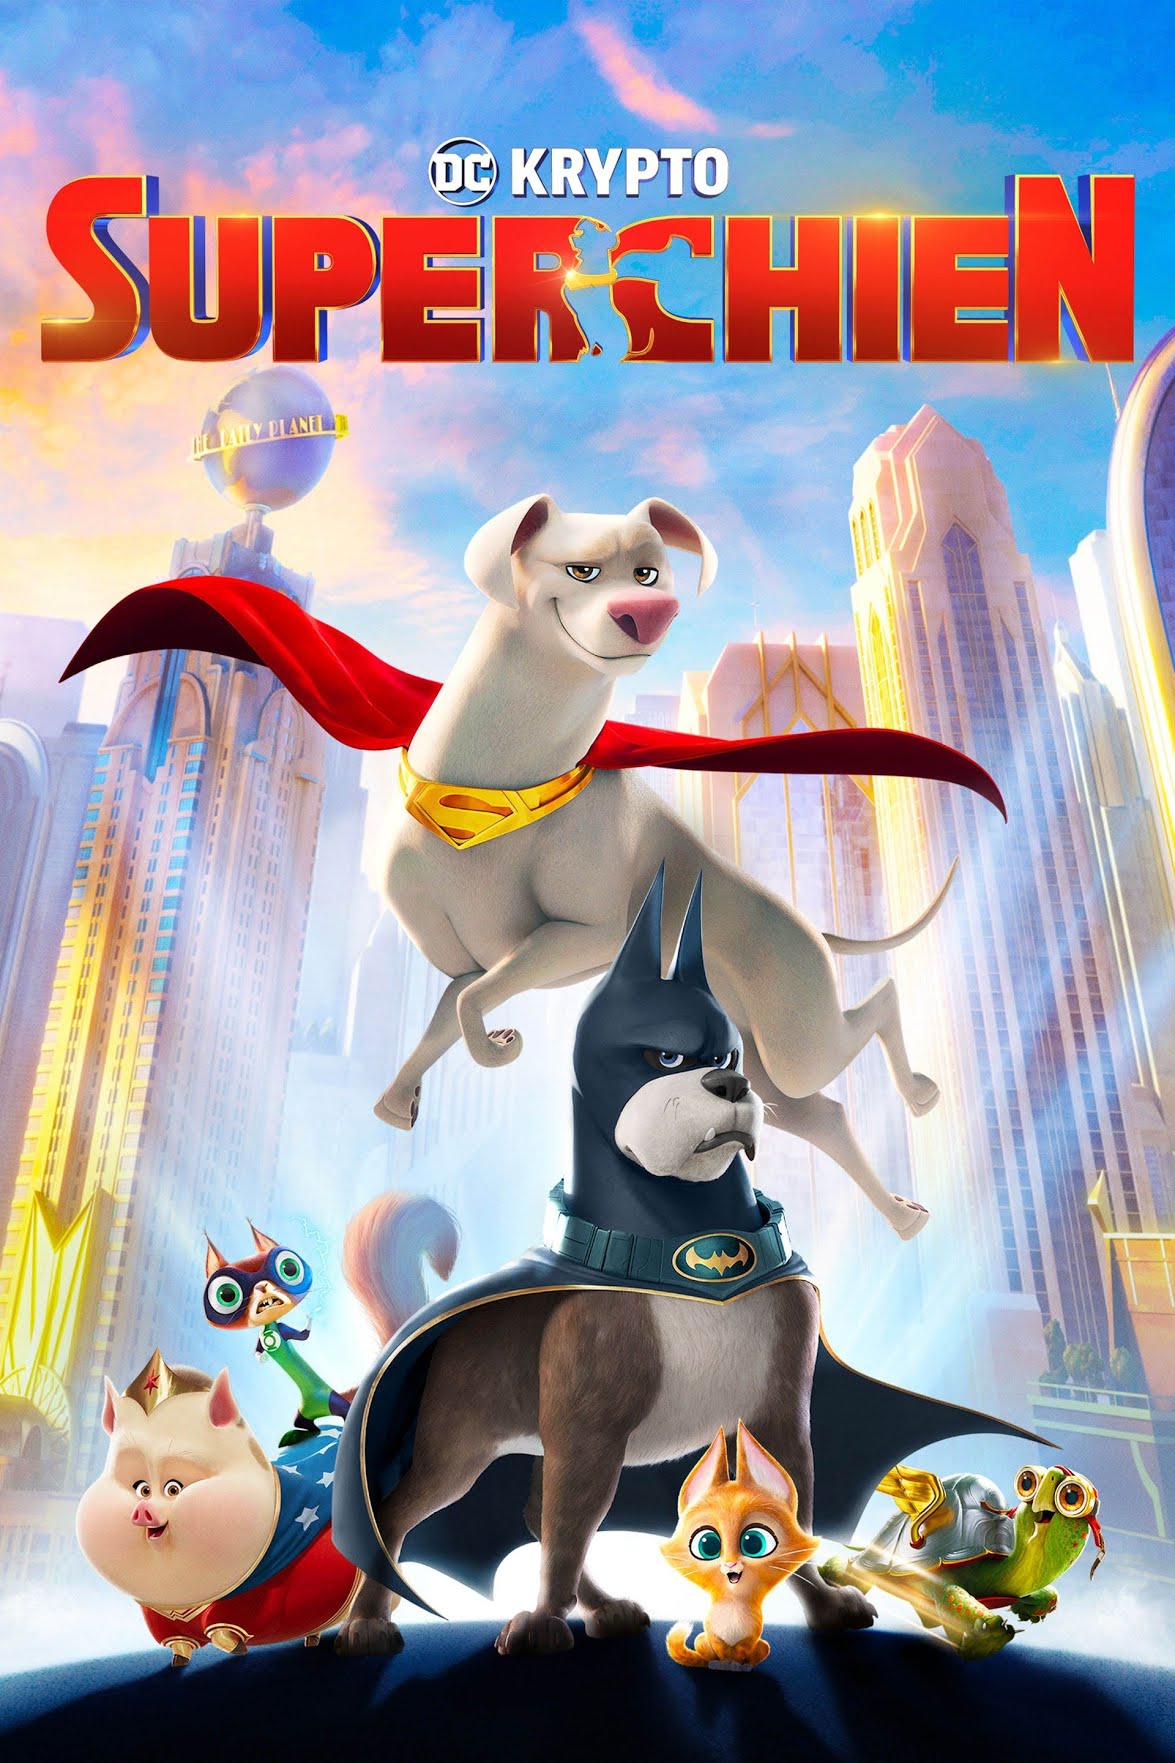 Film : DC Krypto Super-chien (27 janvier)